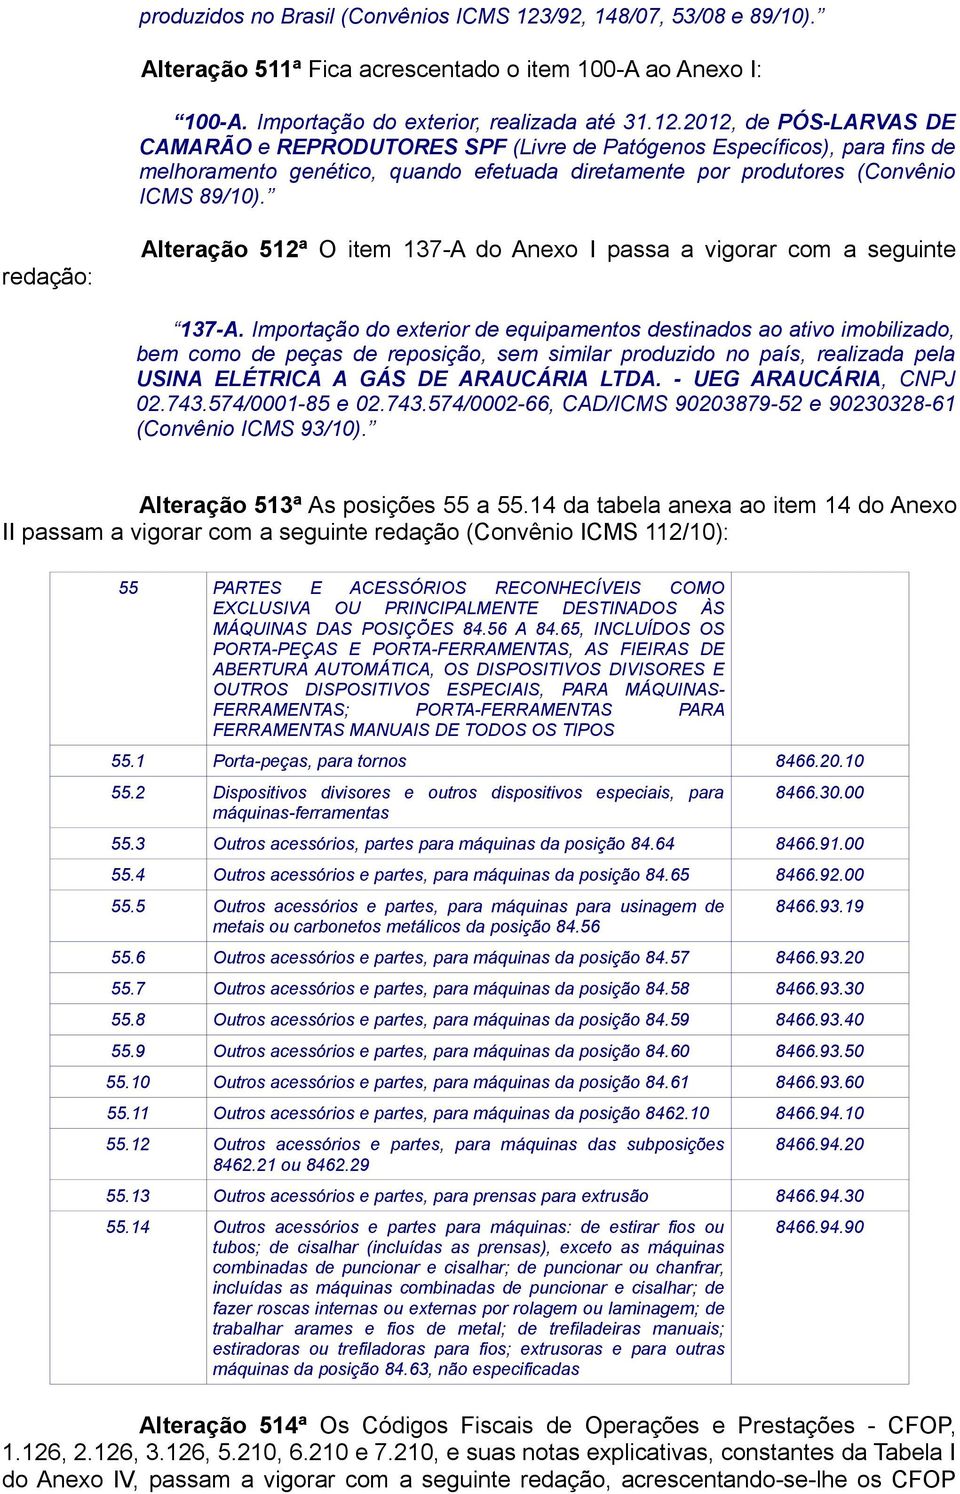 2012, de PÓS-LARVAS DE CAMARÃO e REPRODUTORES SPF (Livre de Patógenos Específicos), para fins de melhoramento genético, quando efetuada diretamente por produtores (Convênio ICMS 89/10).